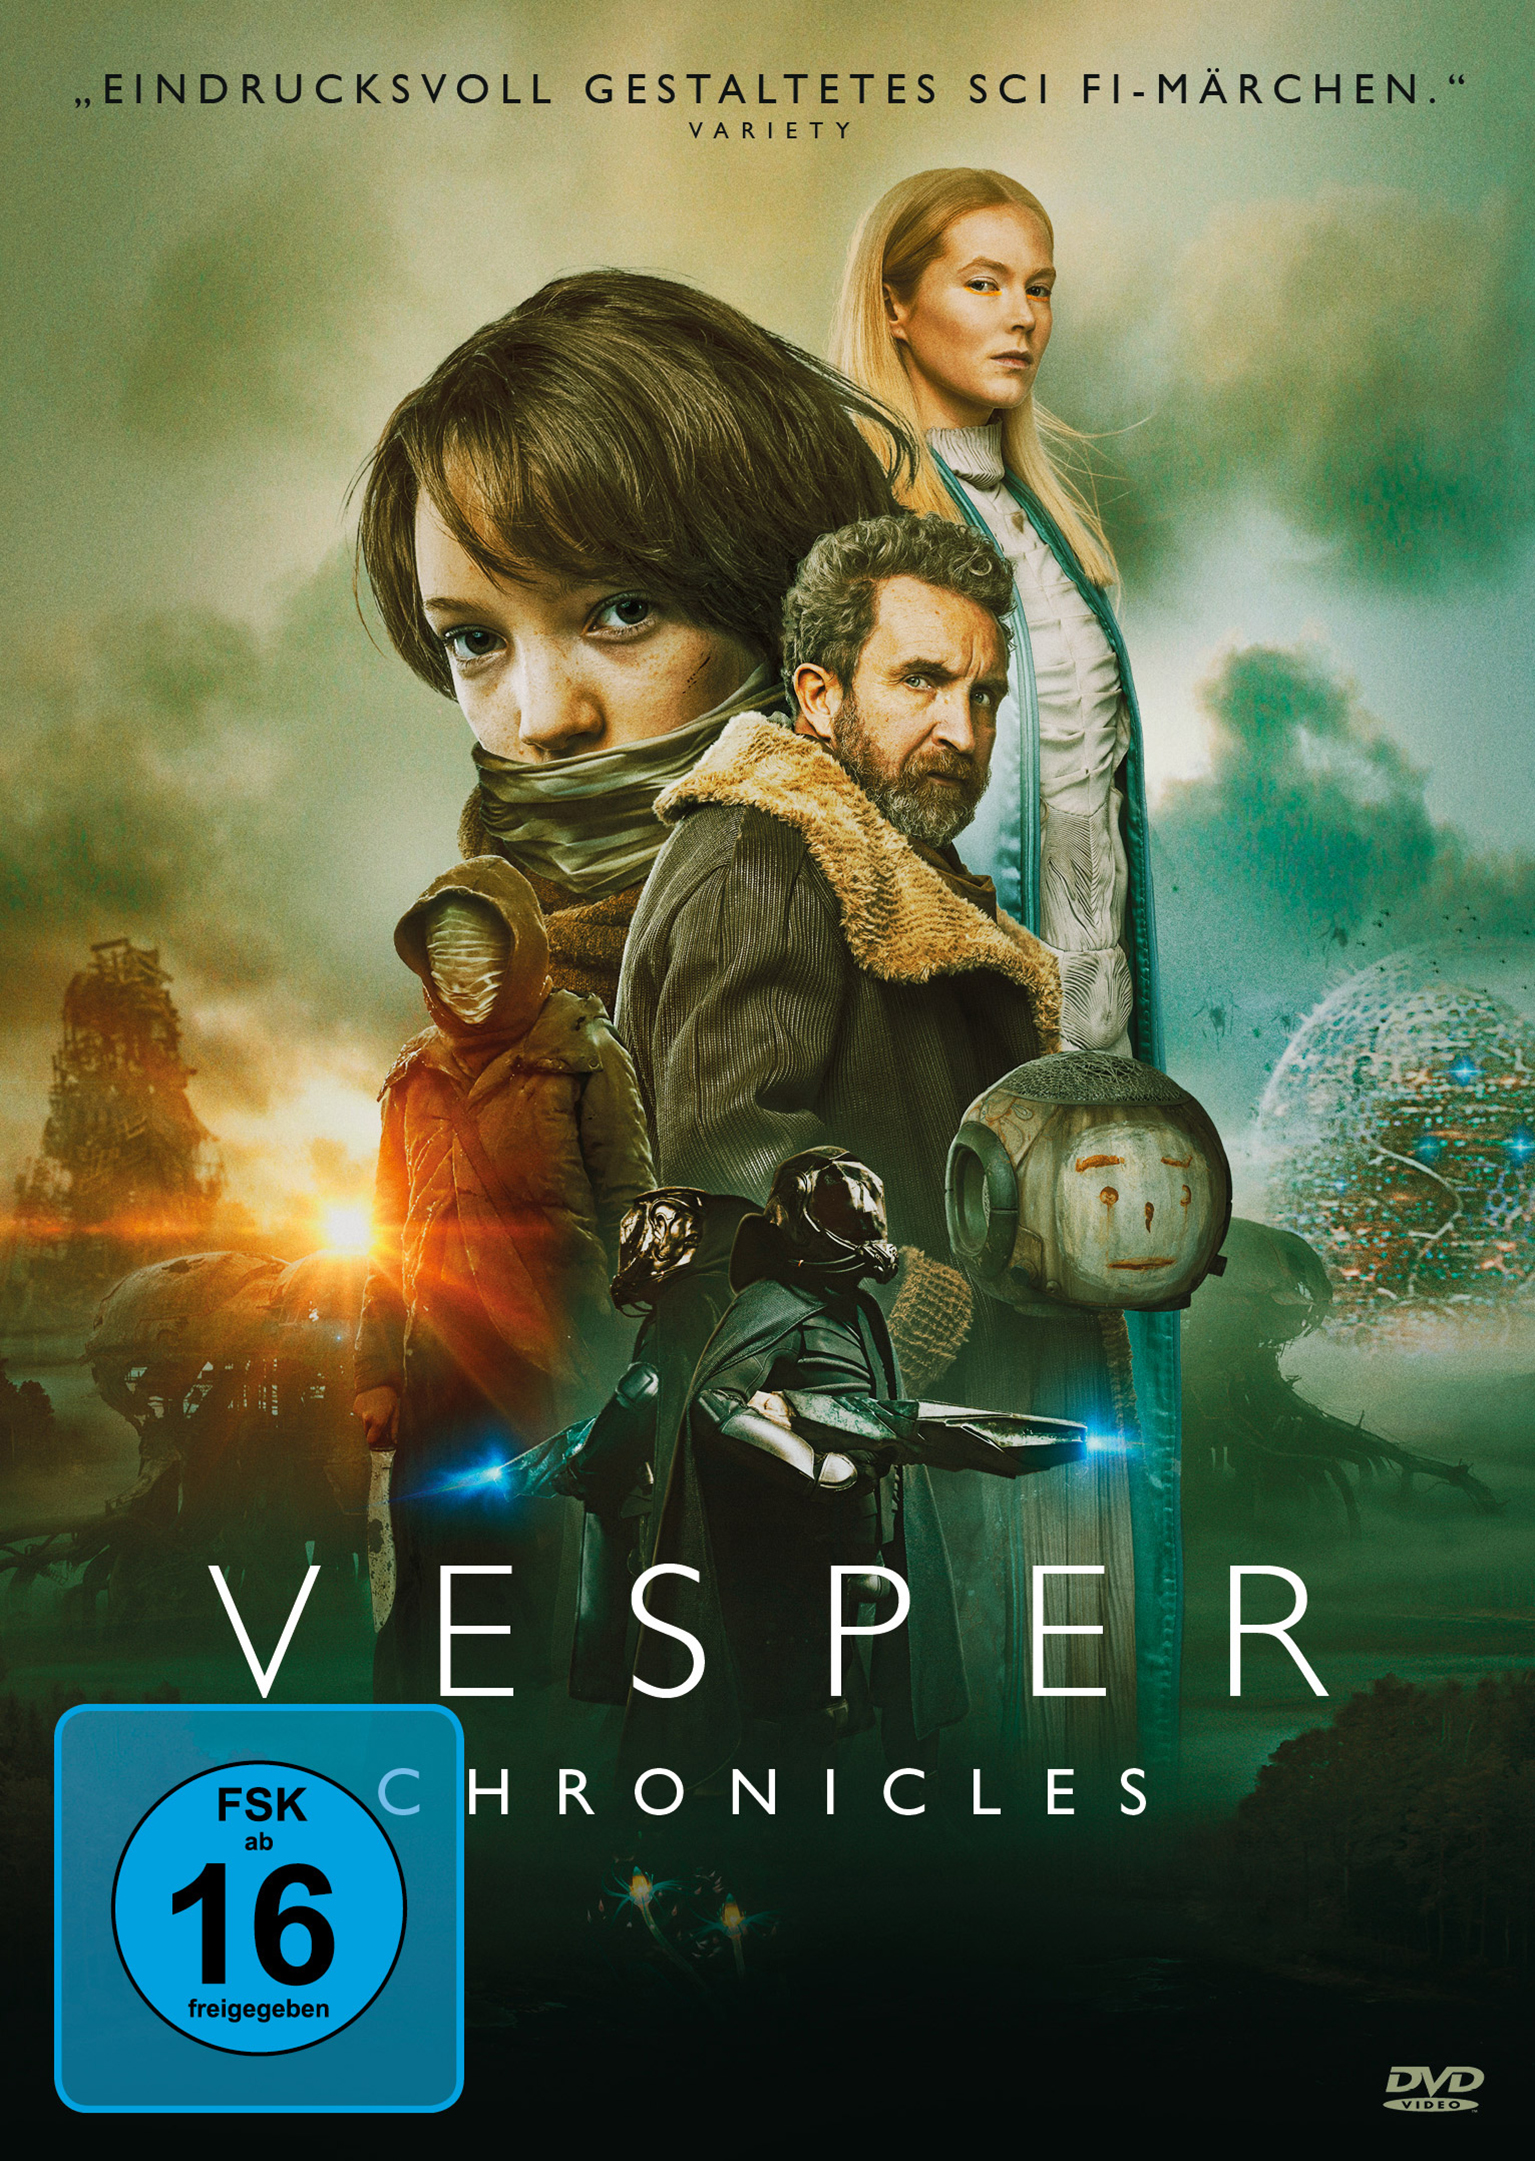 Vesper Chronicles (DVD) 